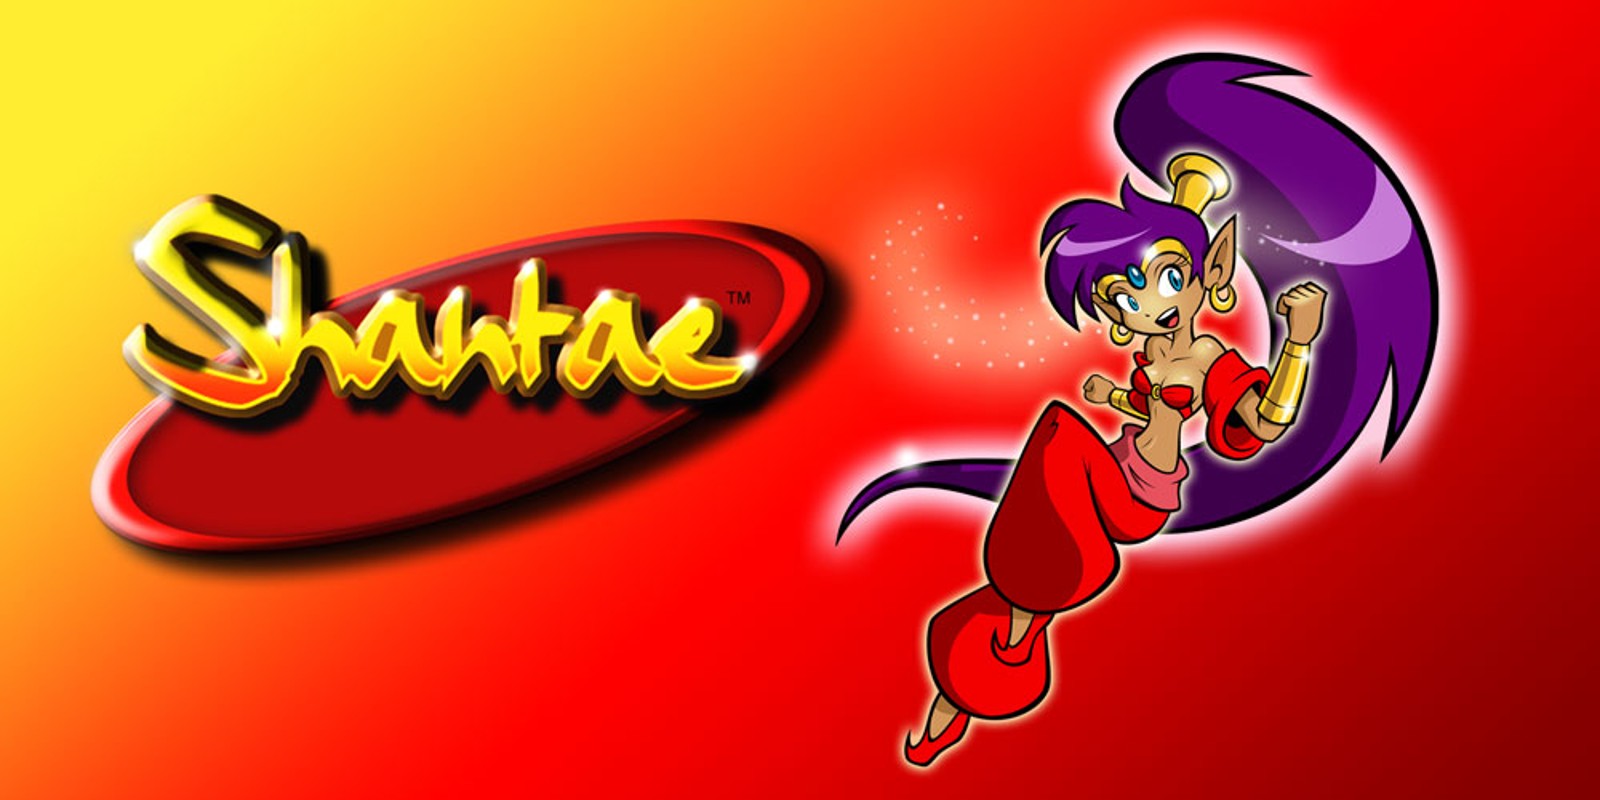 Shantae™